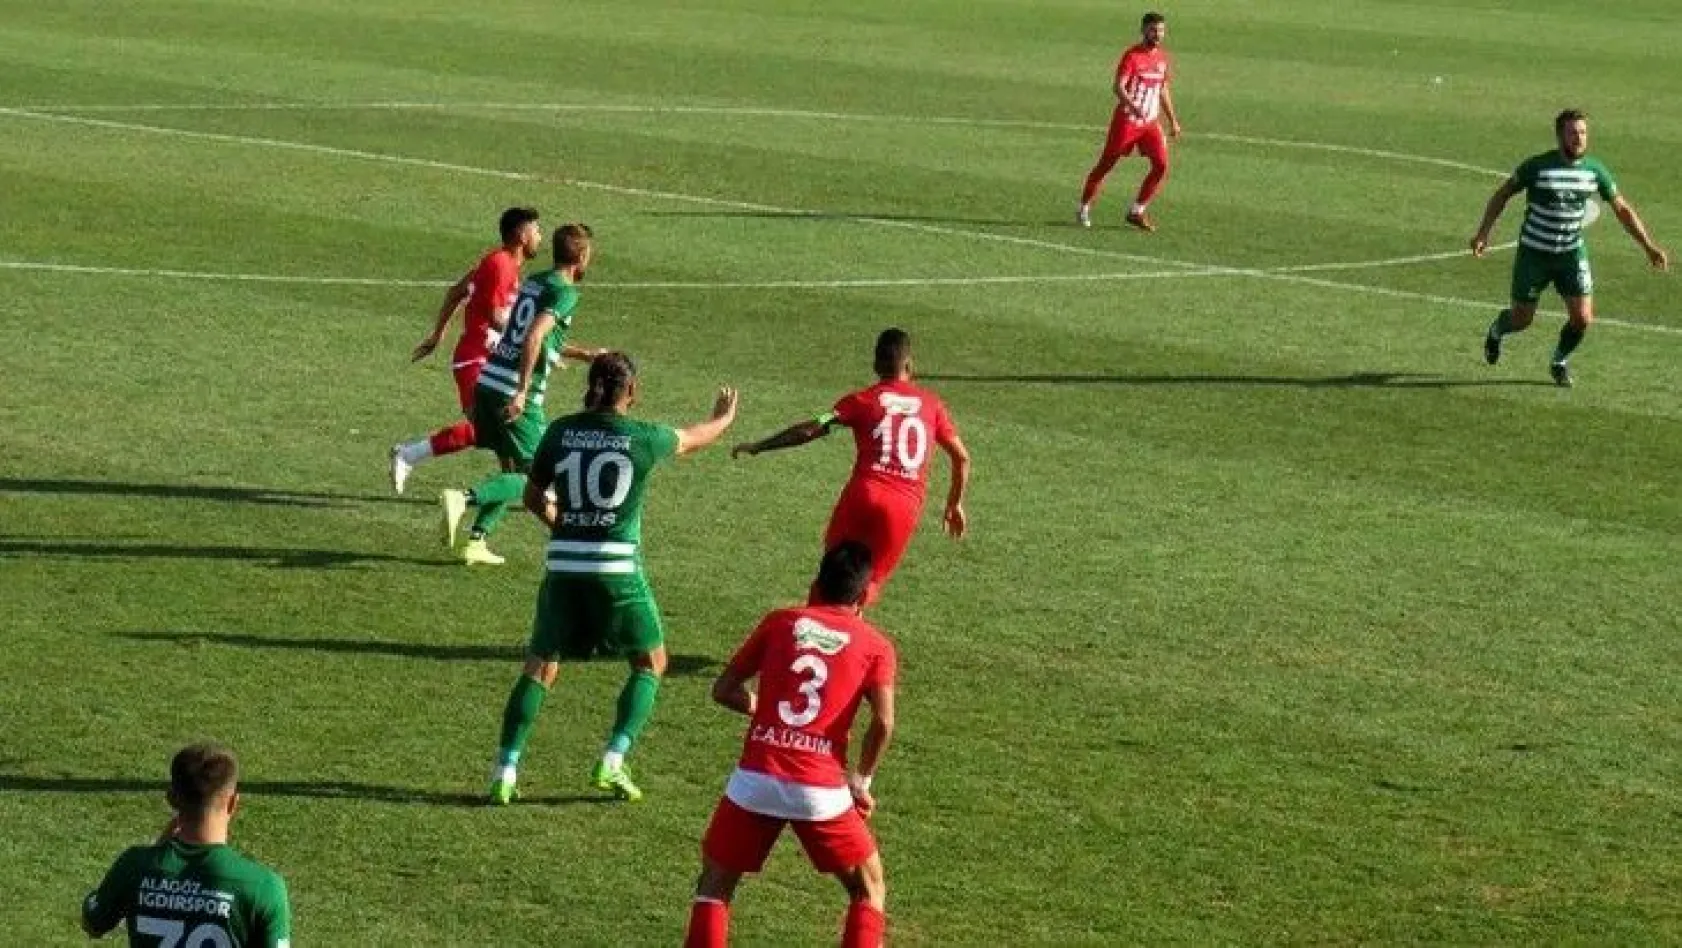 Elazığ Karakoçan son dakika golüyle puanı kaptı